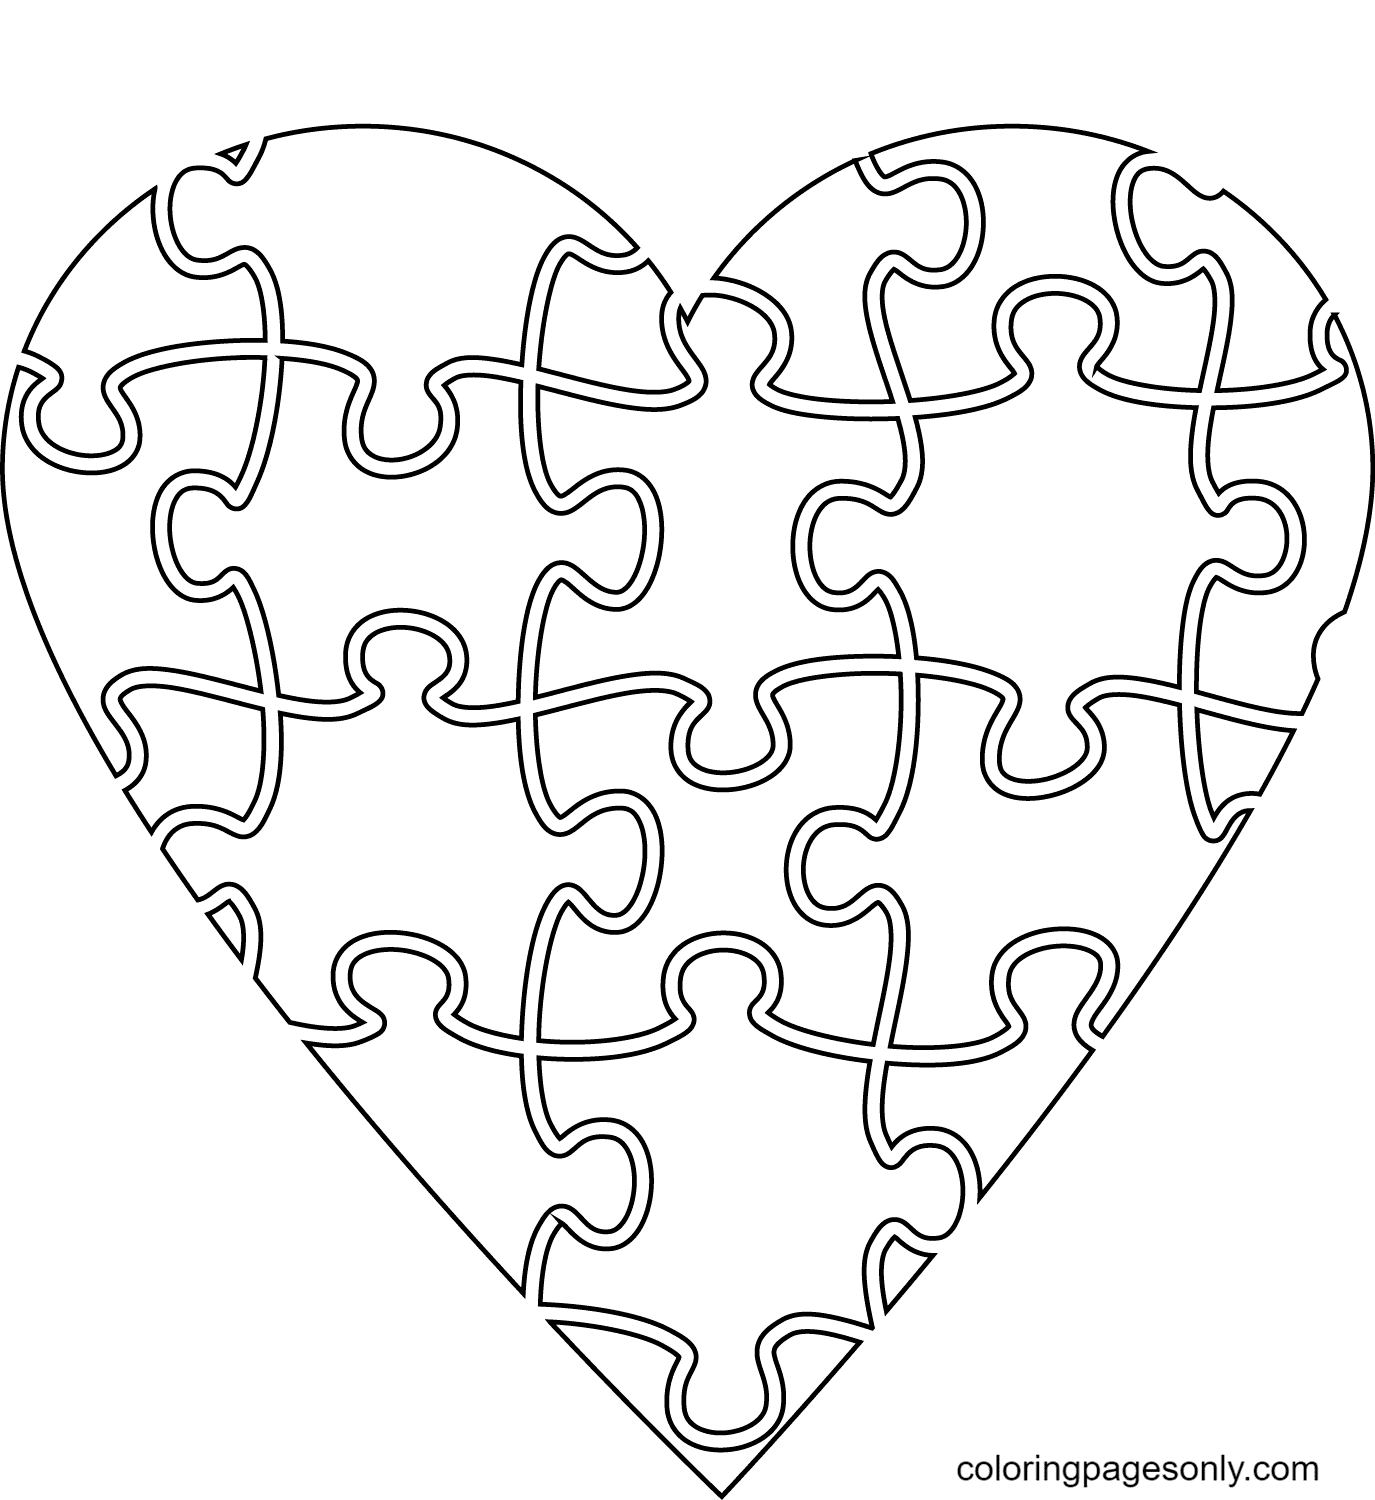 Página para colorir de quebra-cabeça de coração